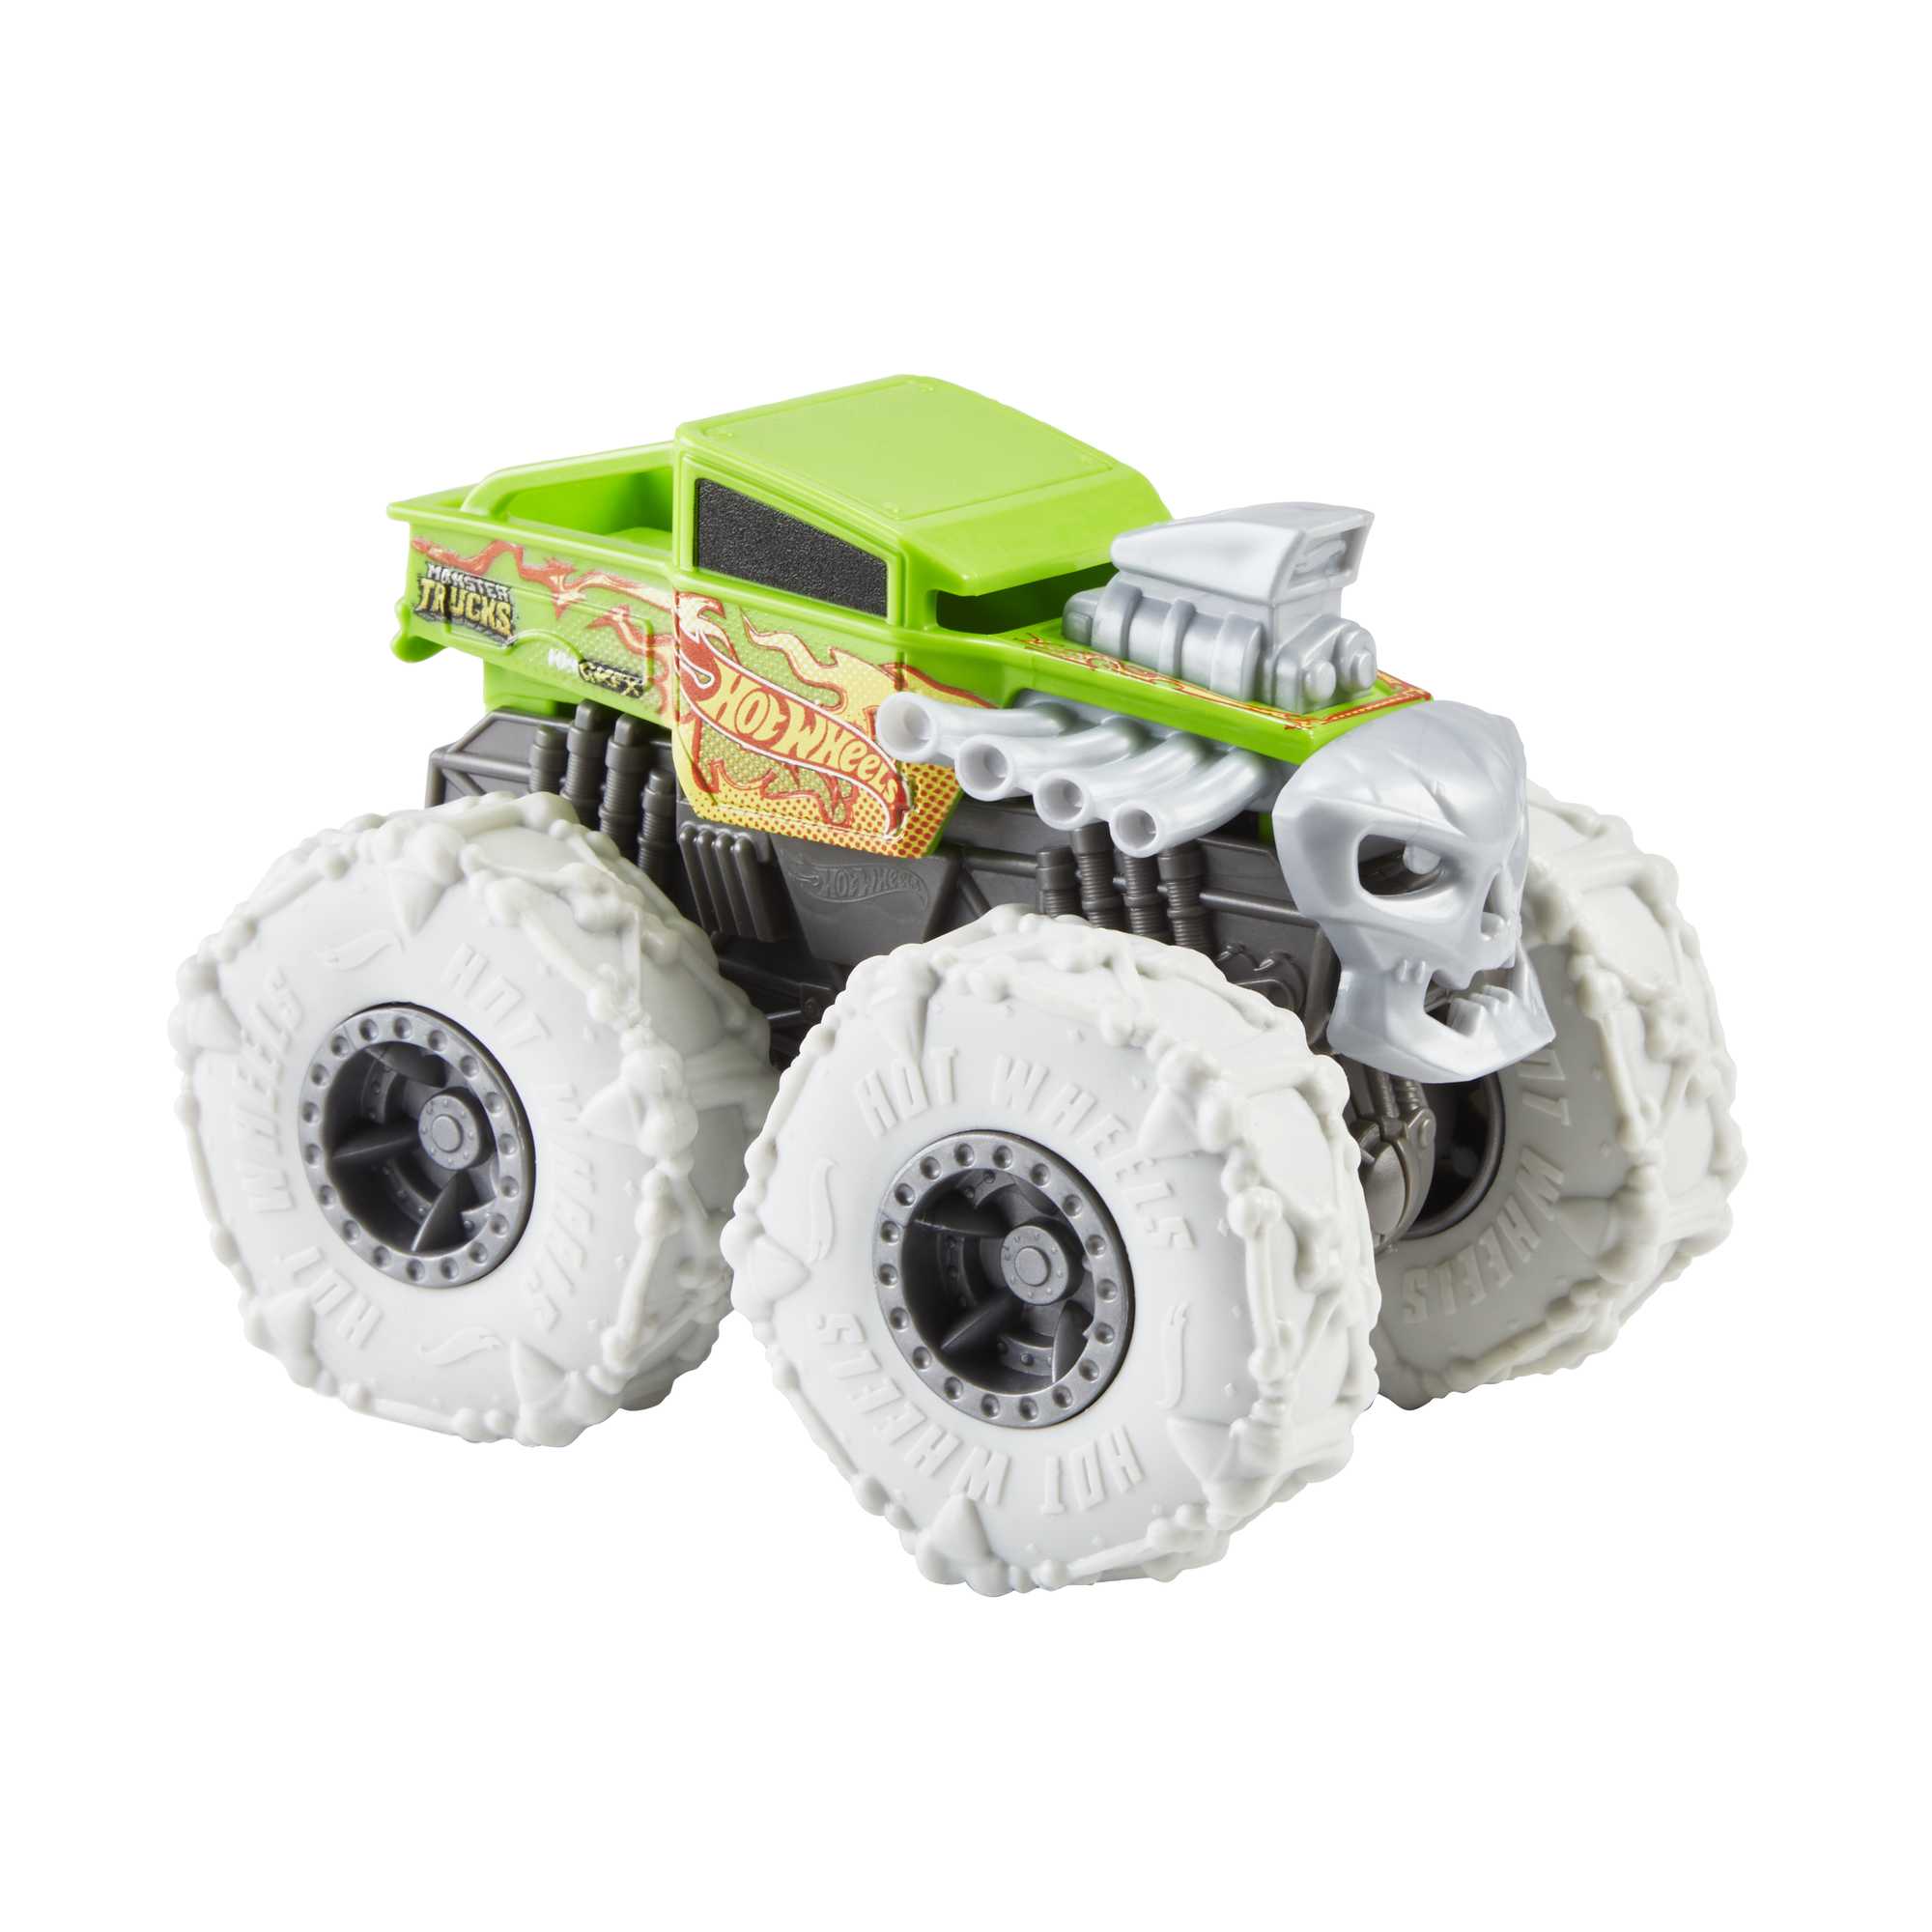 Hot Wheels Monster Trucks Bone Shaker Vehicle | Mattel